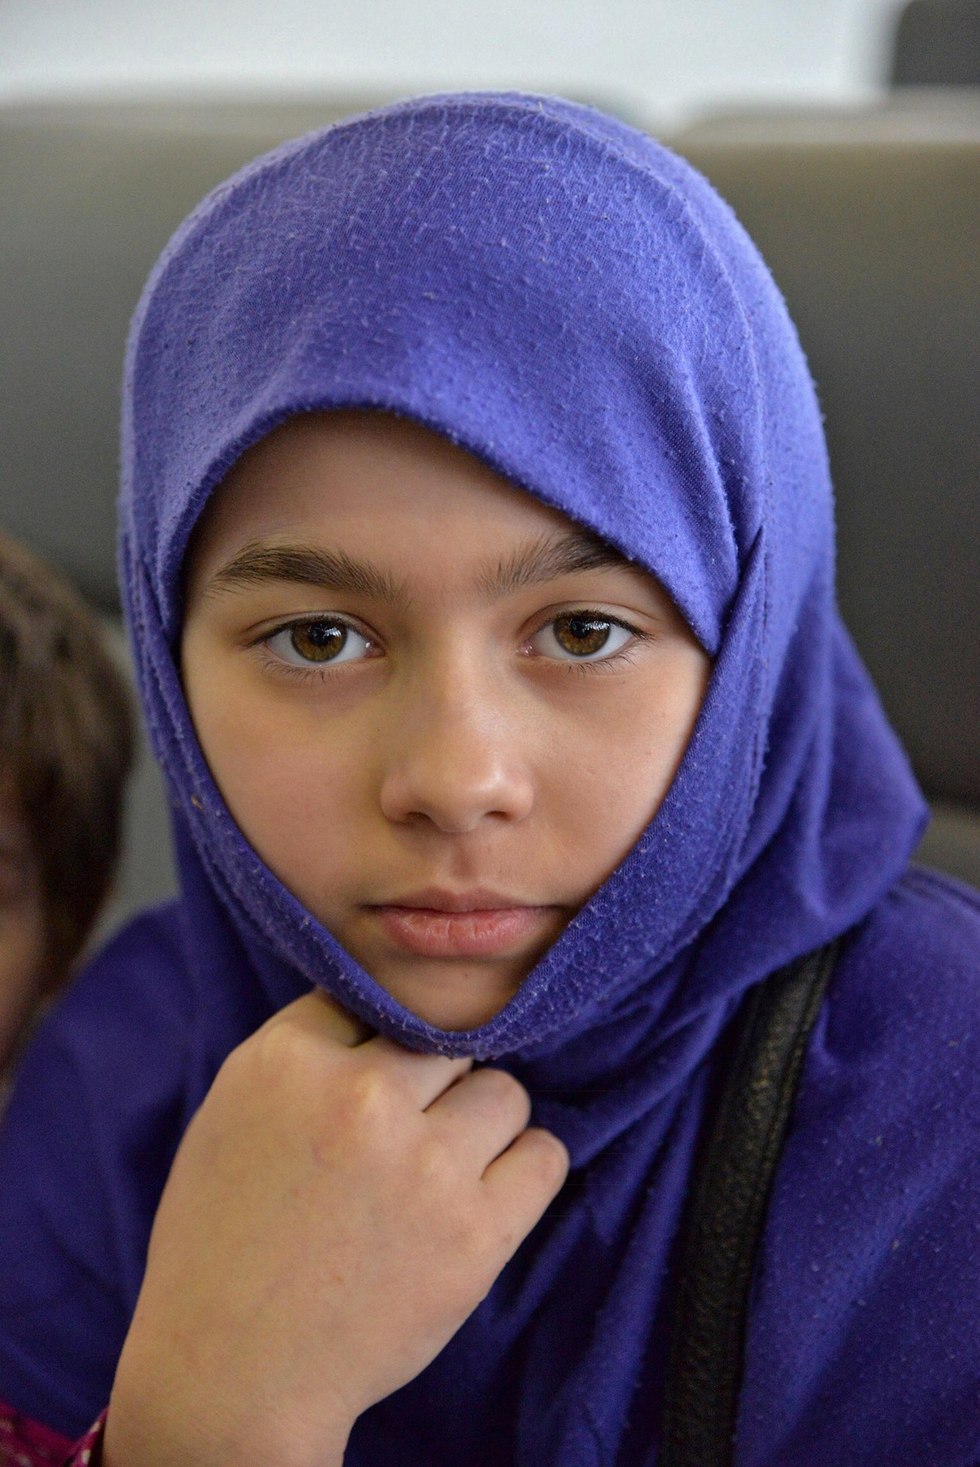 רוסיה החזירה הביתה עשרות ילדים של פעילי דאעש ב עיראק (צילום: EPA)